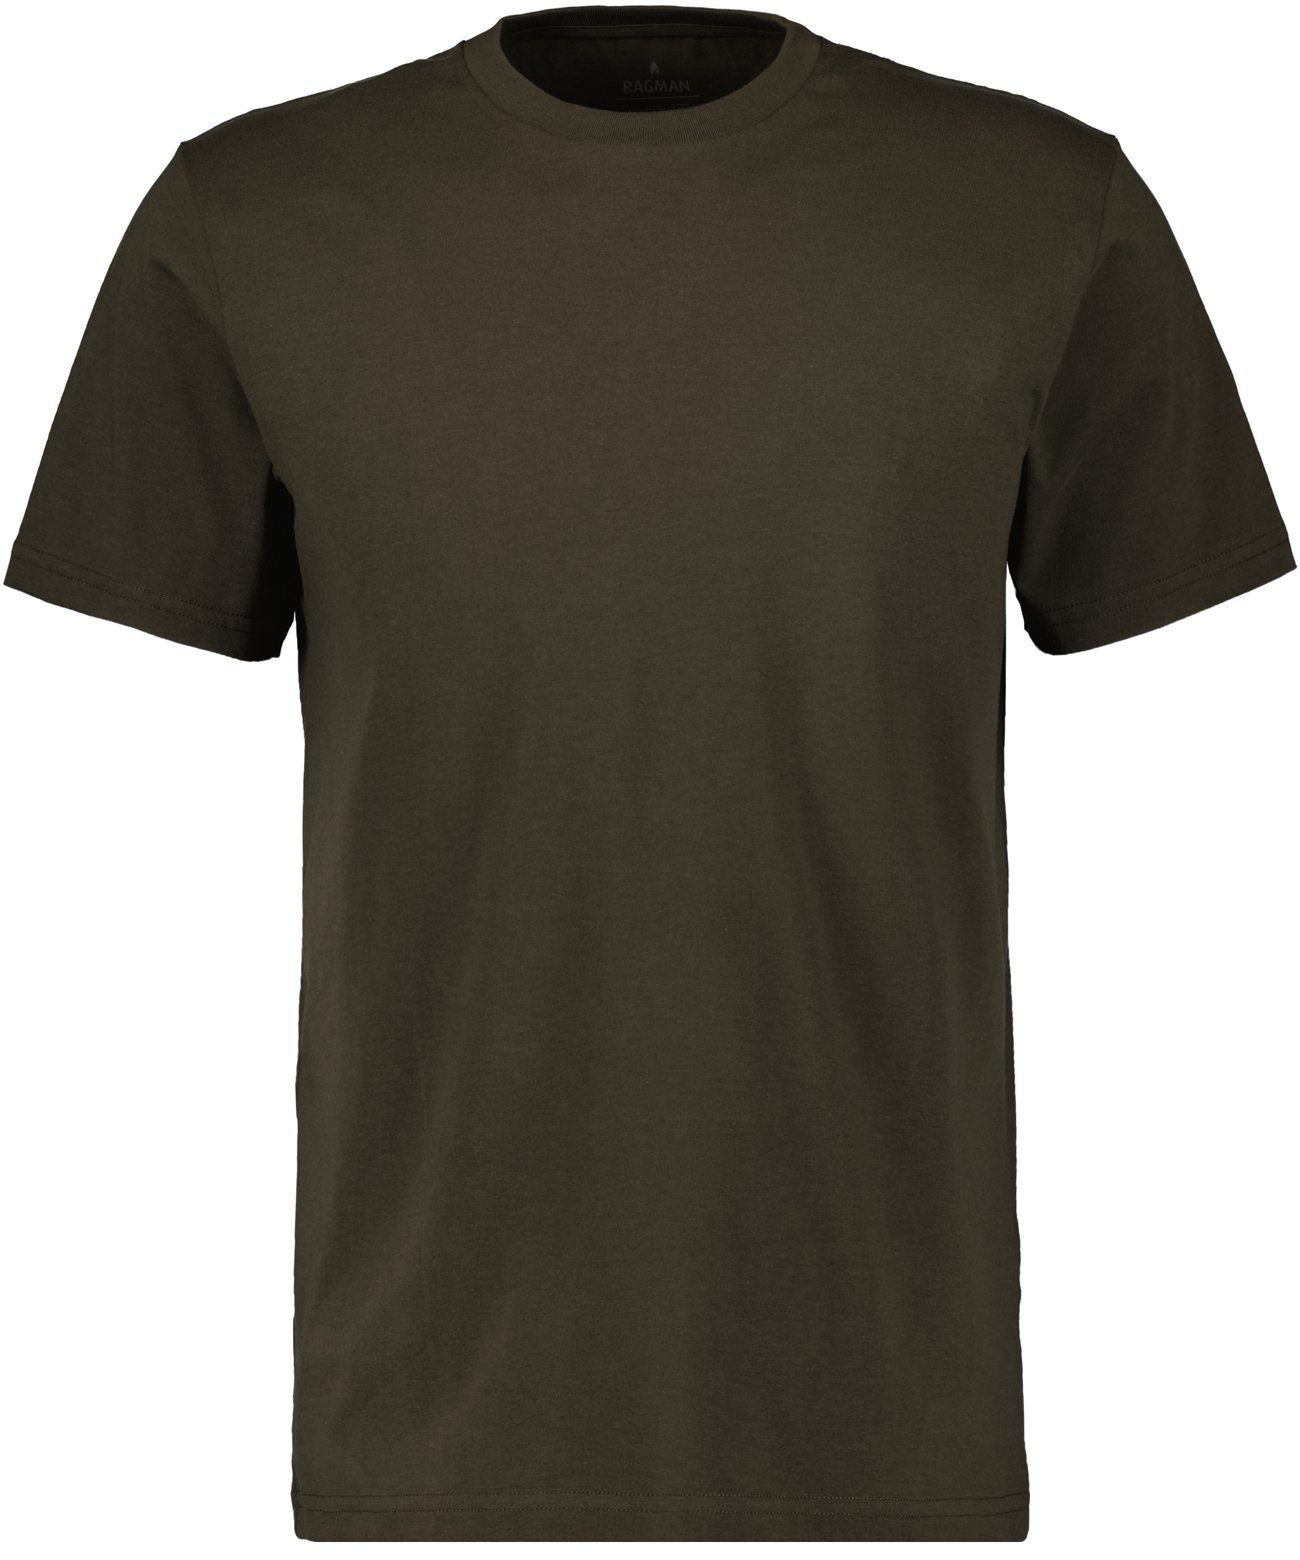 RAGMAN T-Shirt Khaki-308